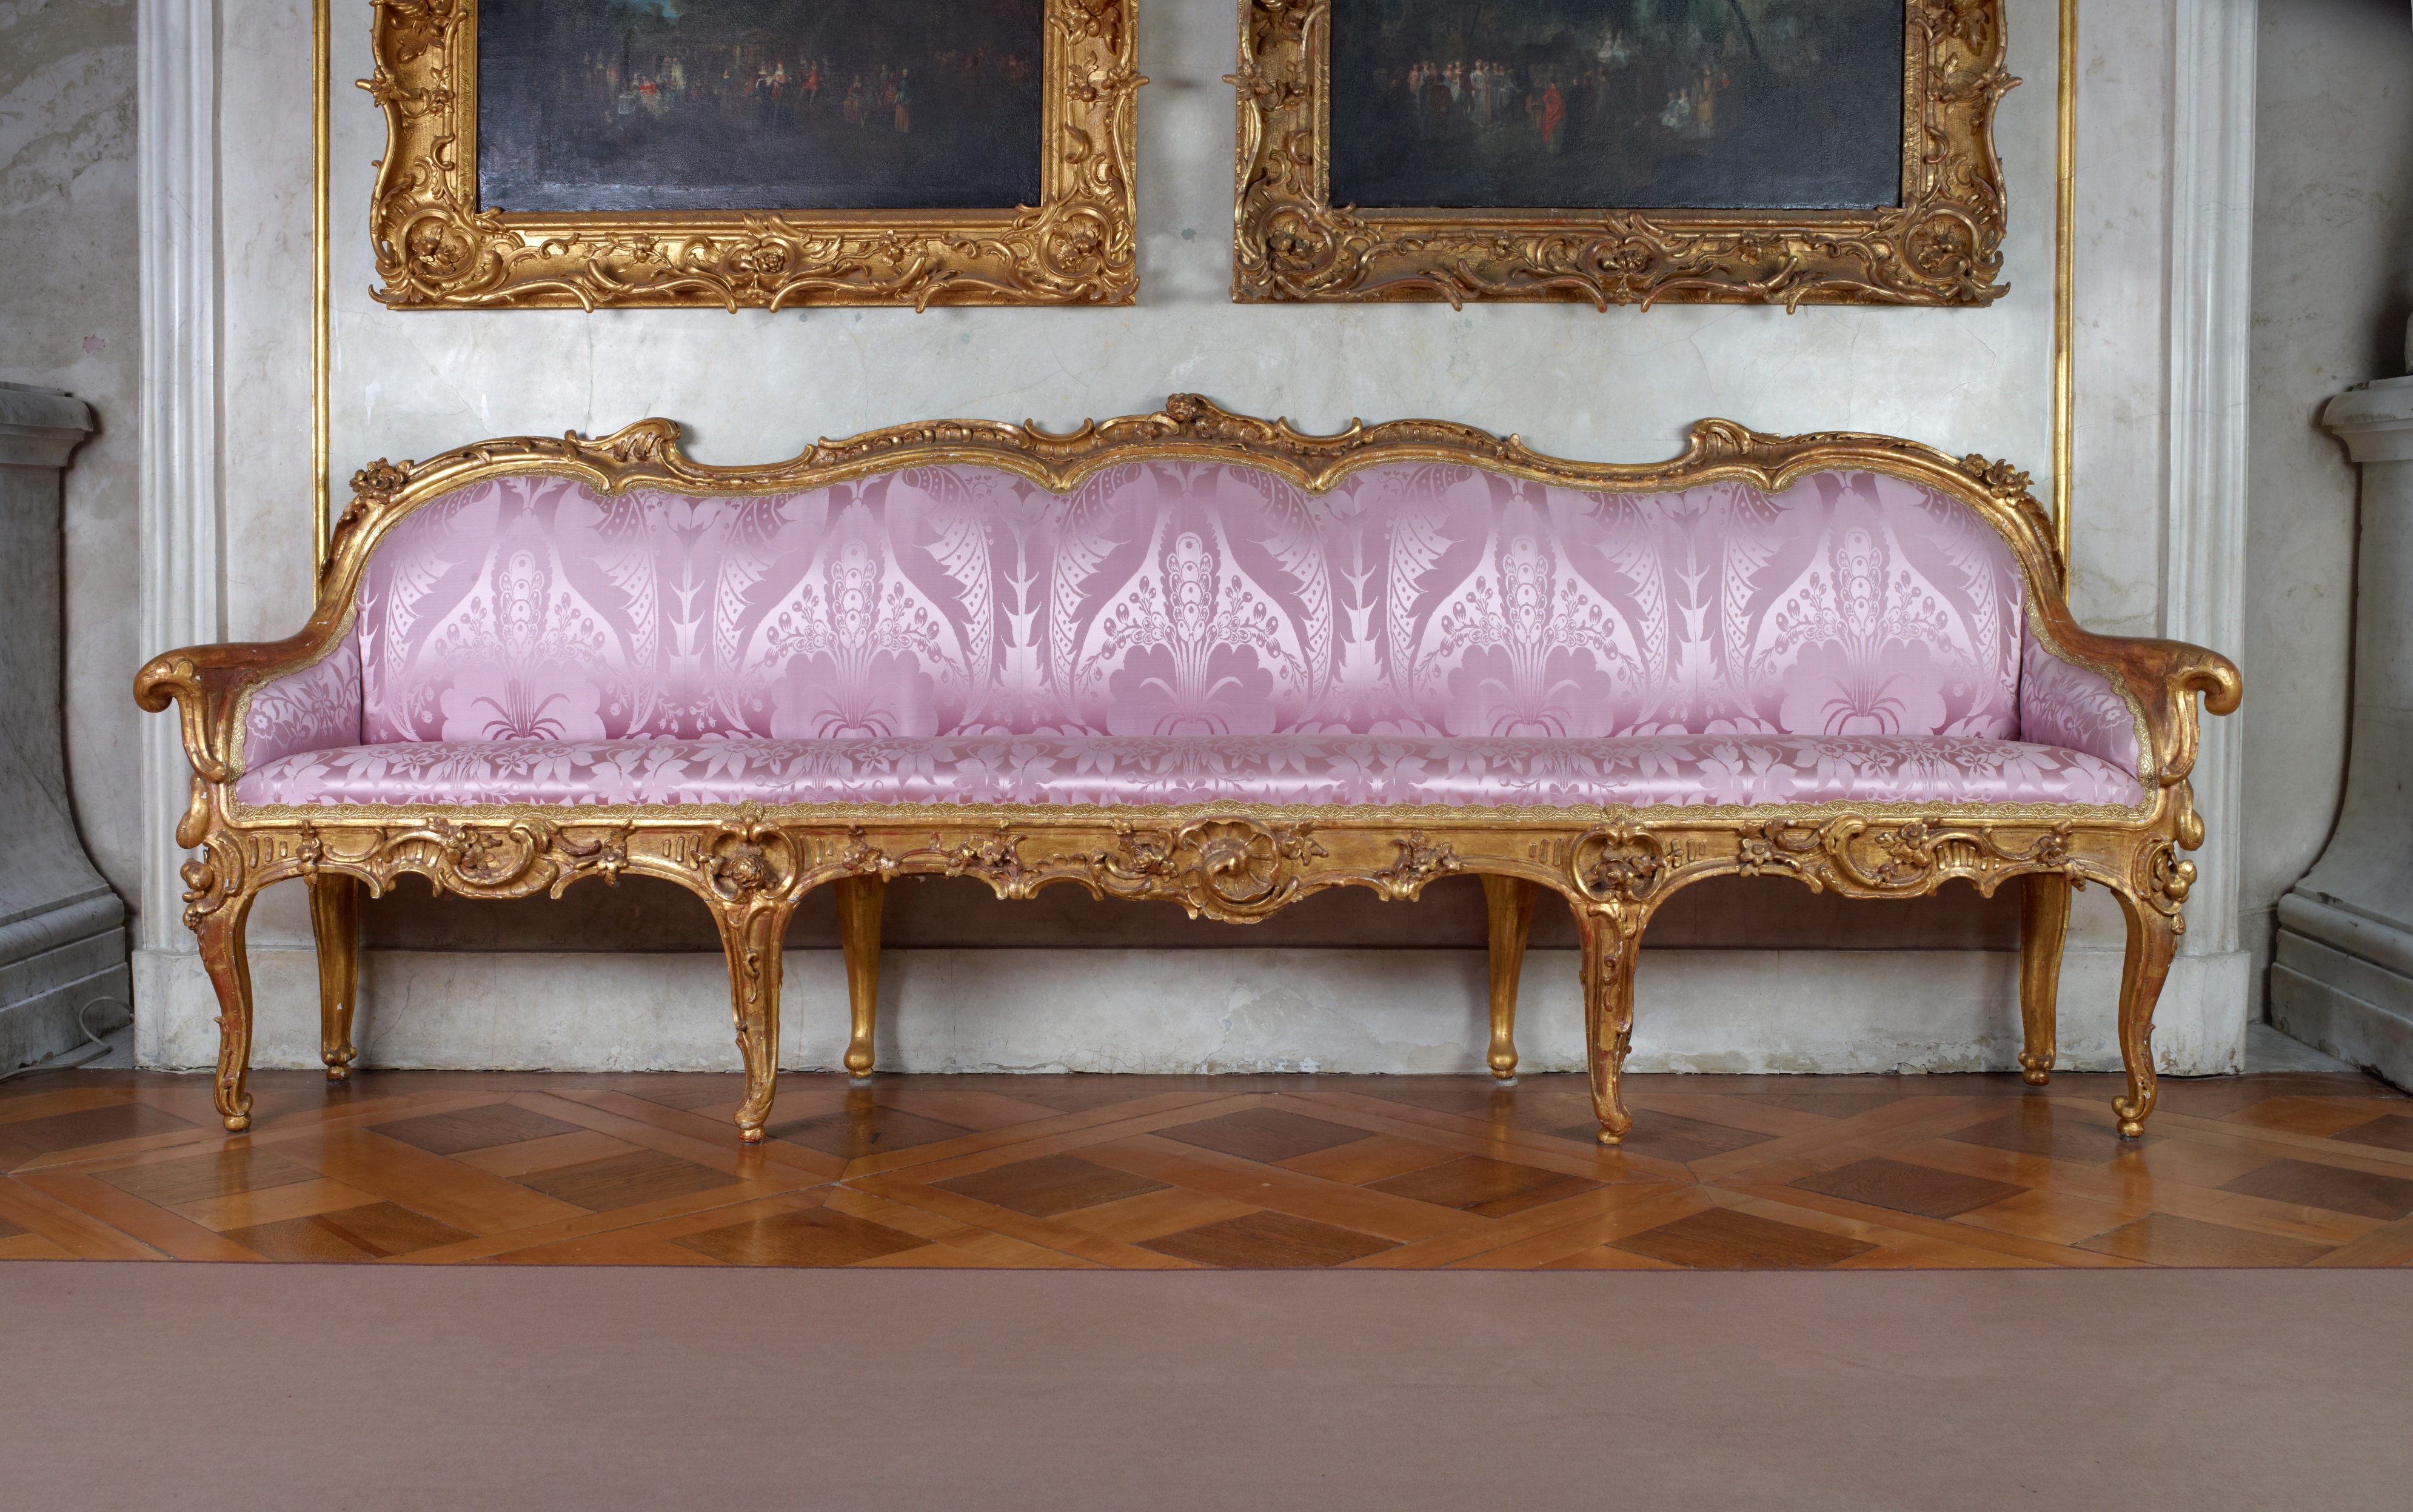 Sofa aus der kleinen Galerie von Schloss Sanssouci, IV 624. (Stiftung Preußische Schlösser und Gärten Berlin-Brandenburg CC BY-NC-SA)